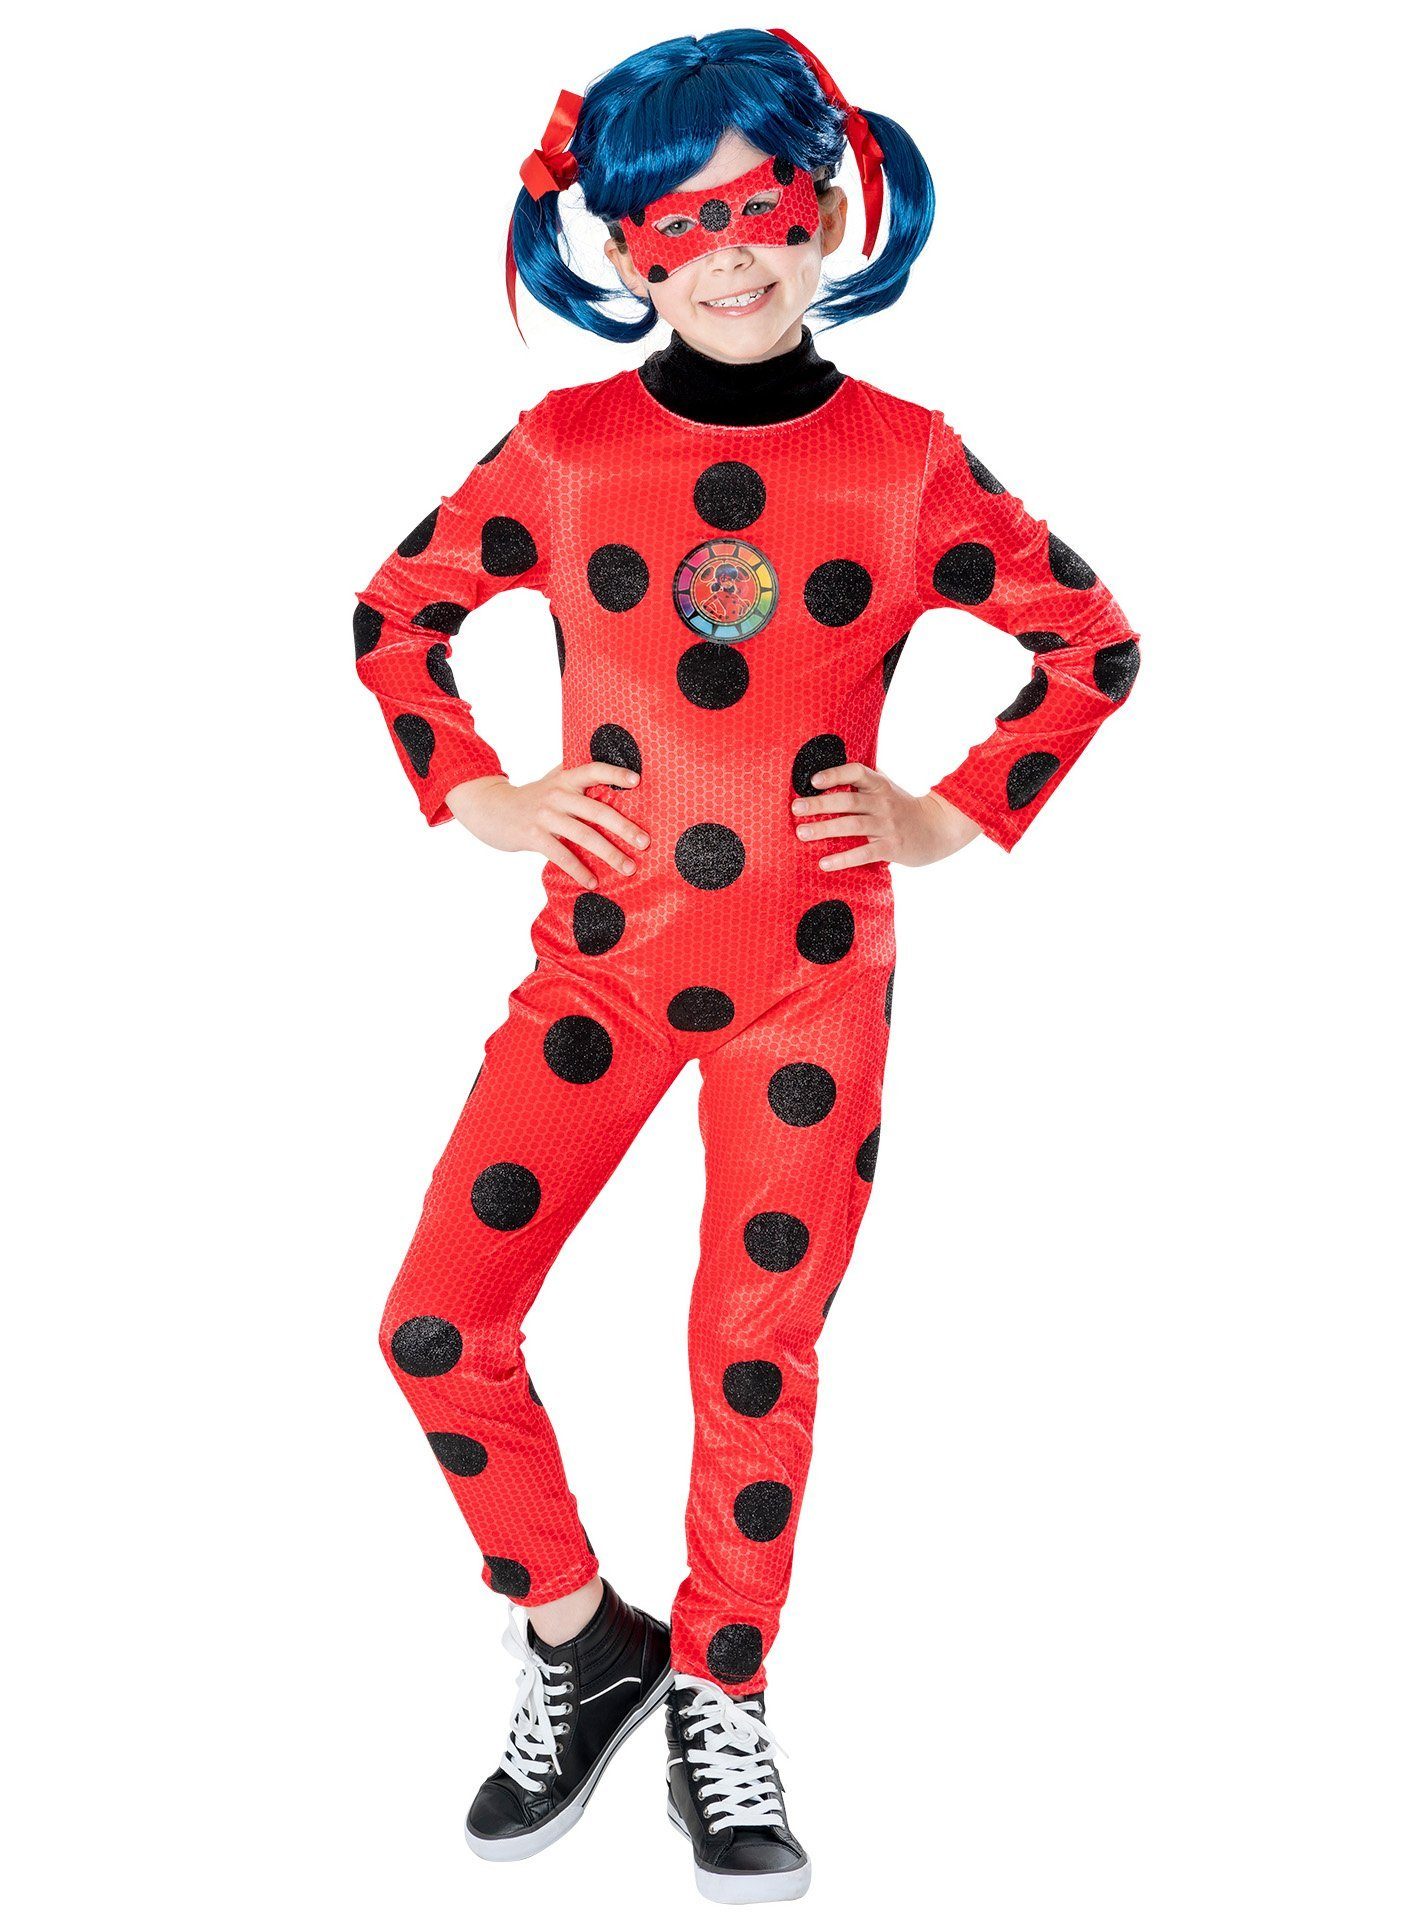 Metamorph Kostüm Miraculous - Ladybug Deluxe Kostüm für Kinder, Lizenzkostüm und Perücke zu den 'Geschichten von Ladybug und Cat Noi